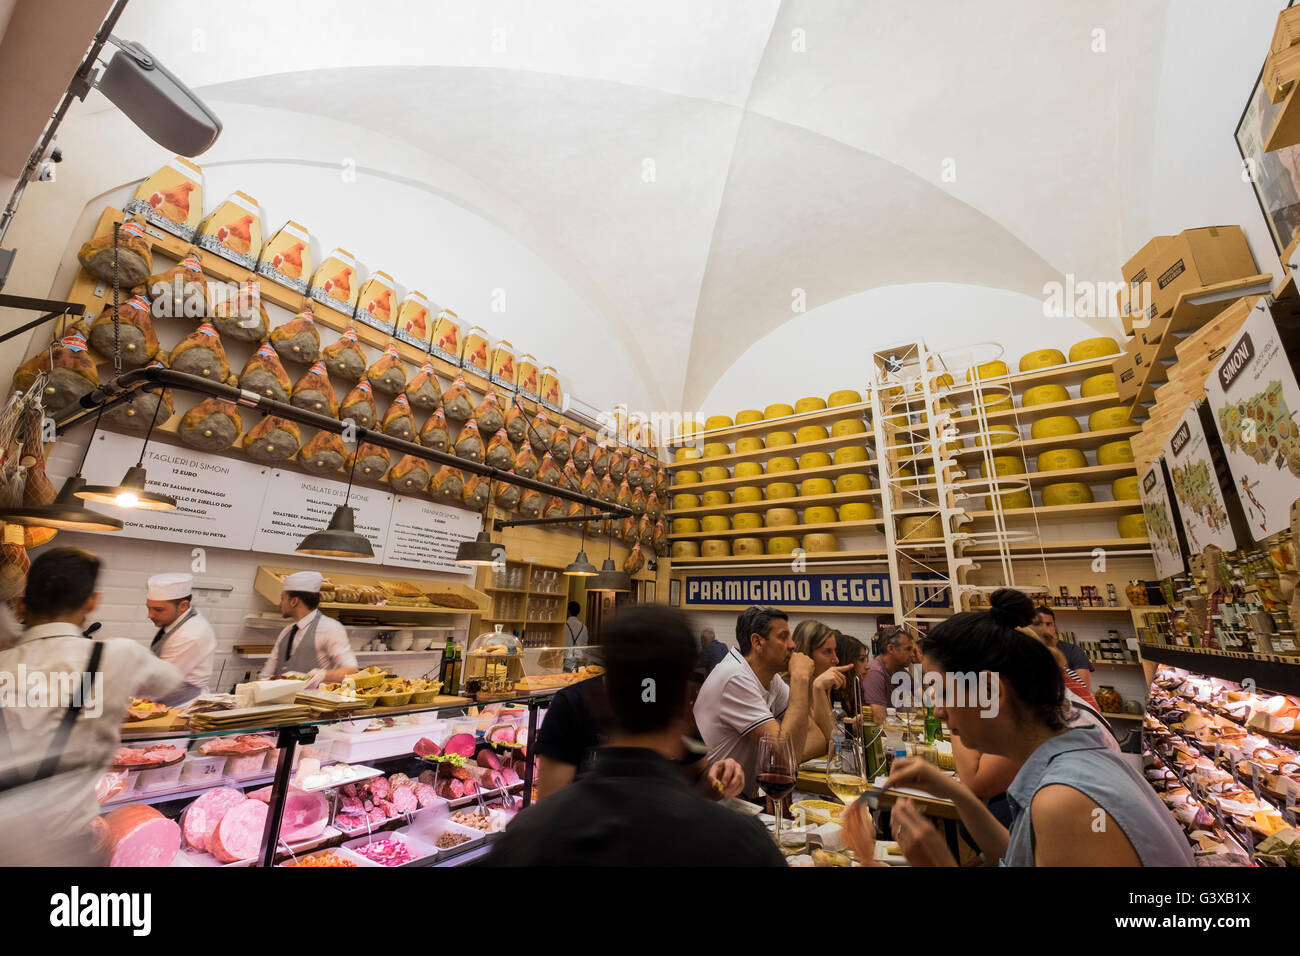 Parmasen géant de fromages et jambons proscuito dans l'épicerie fine et café Salumeria Simoni dans Via draperie, Boligna, Italie Banque D'Images